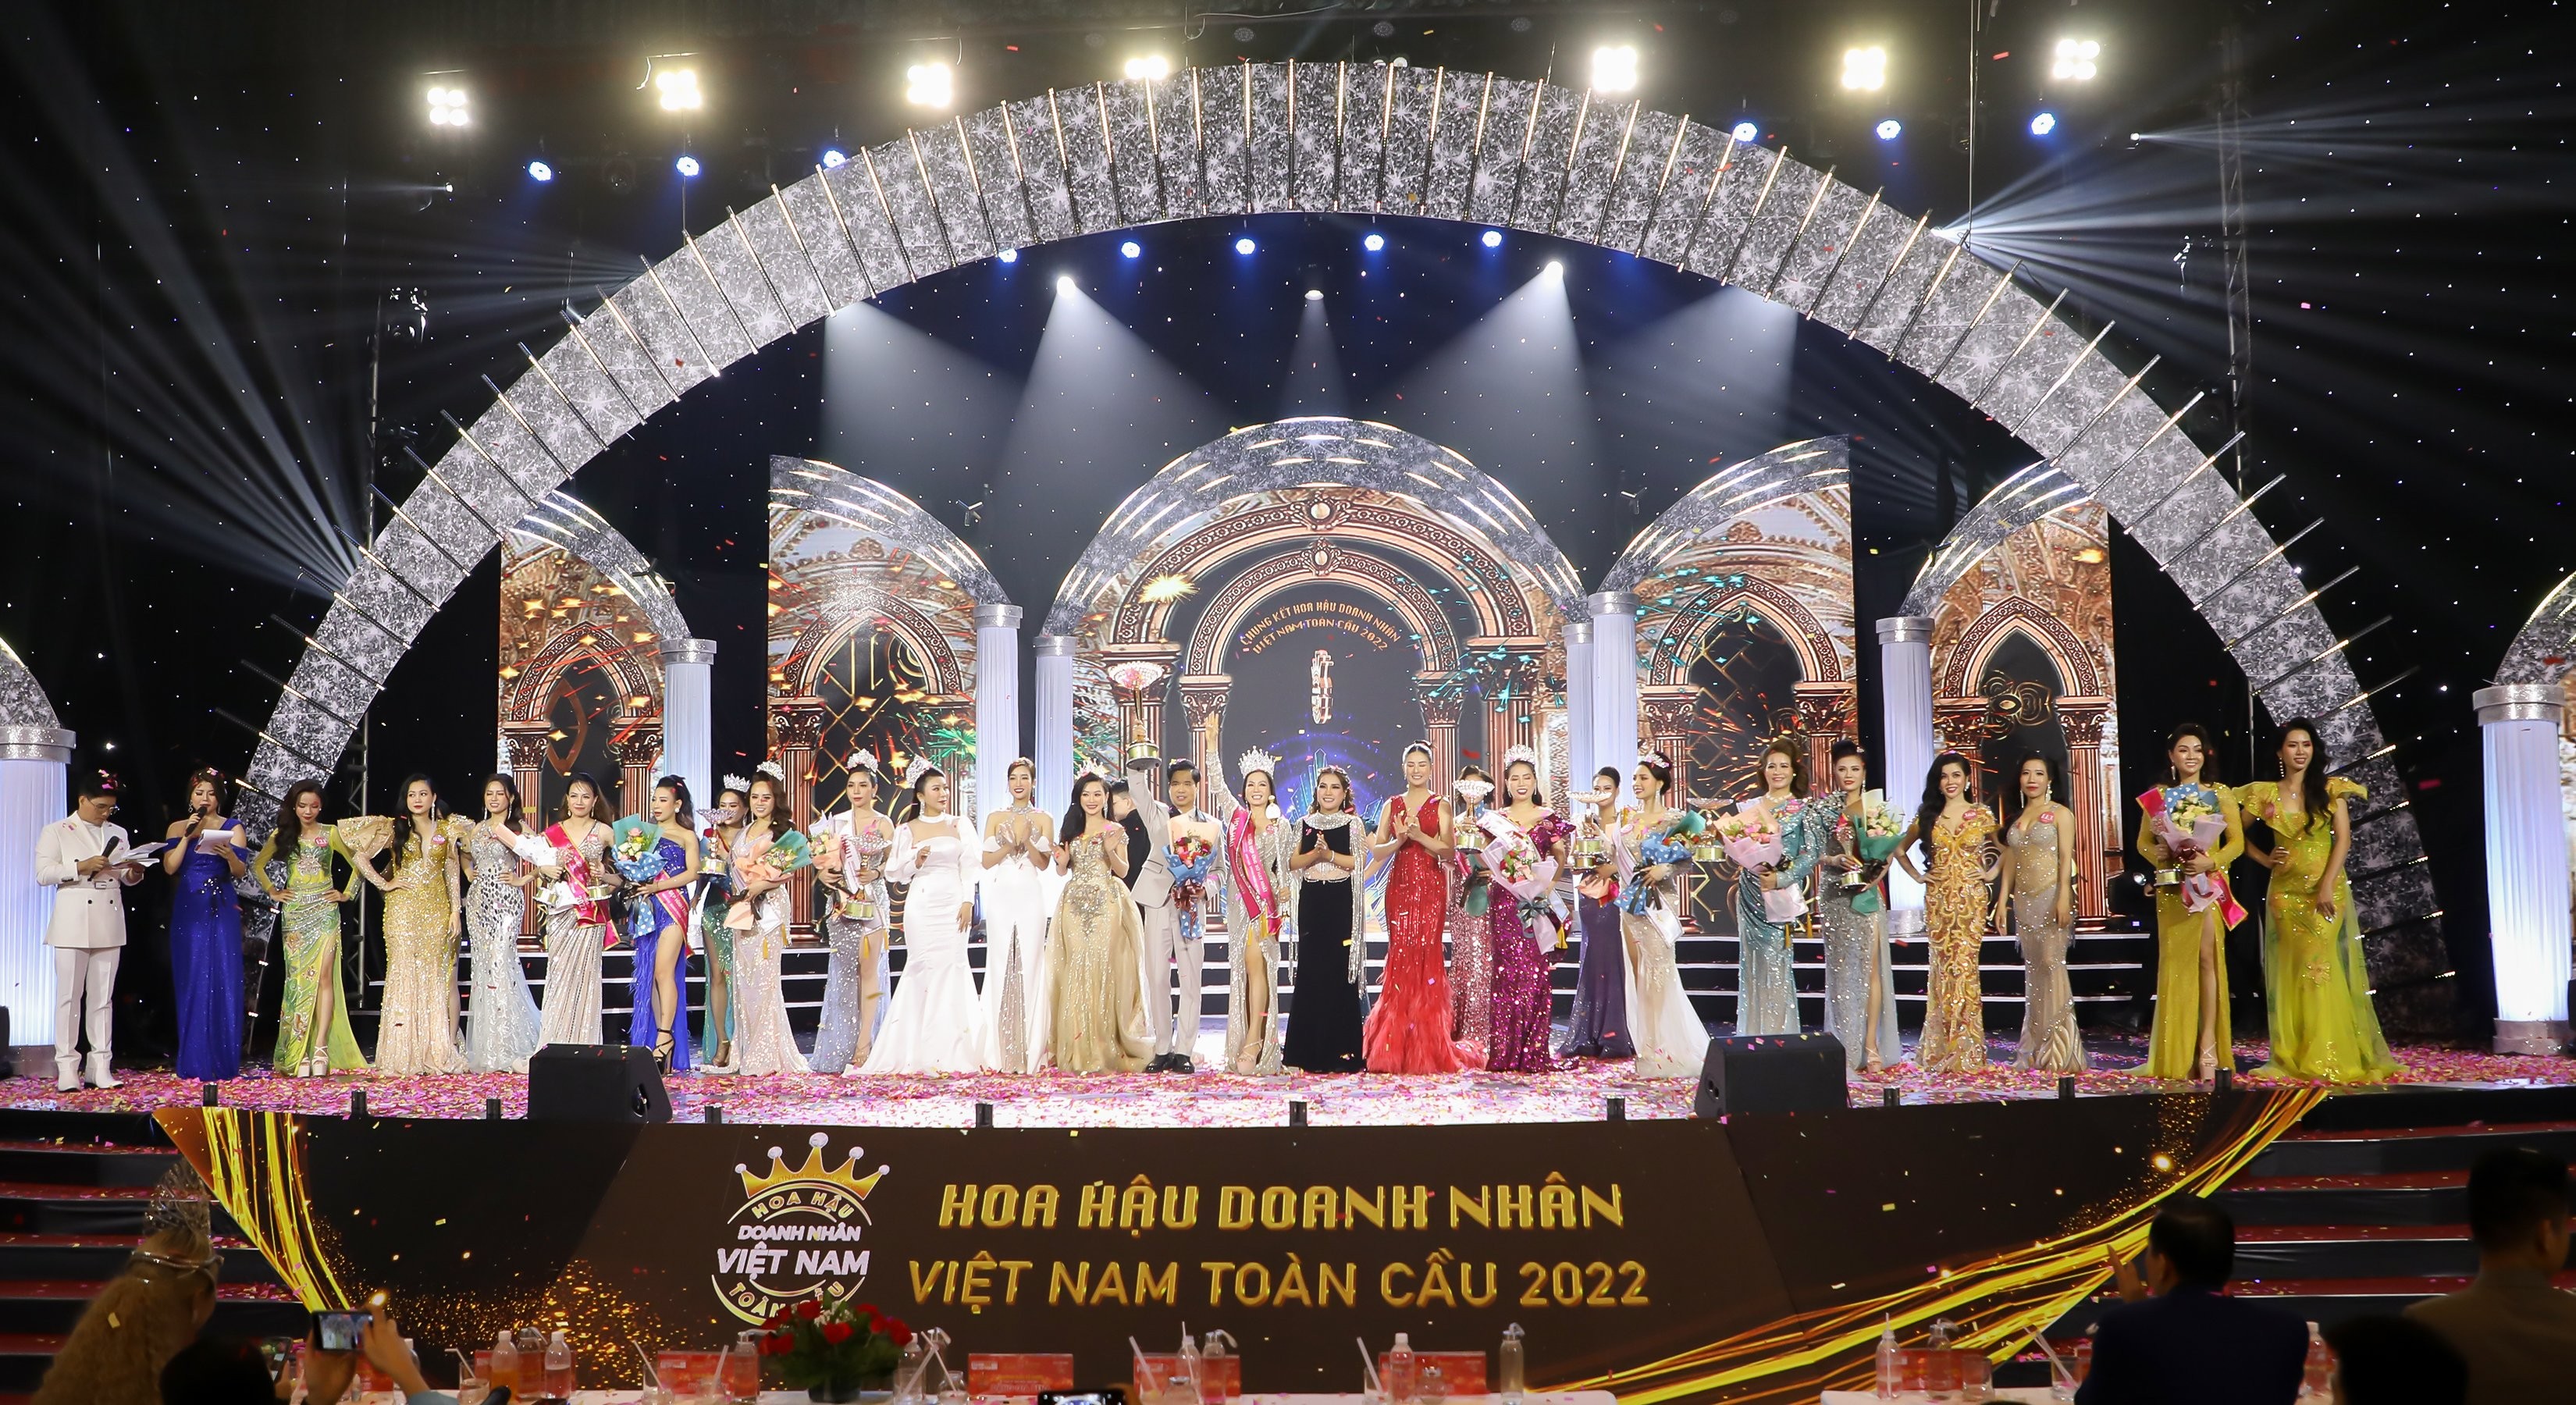 Chung kết toàn Quốc Hoa hậu Doanh nhân Việt Nam Toàn cầu 2022